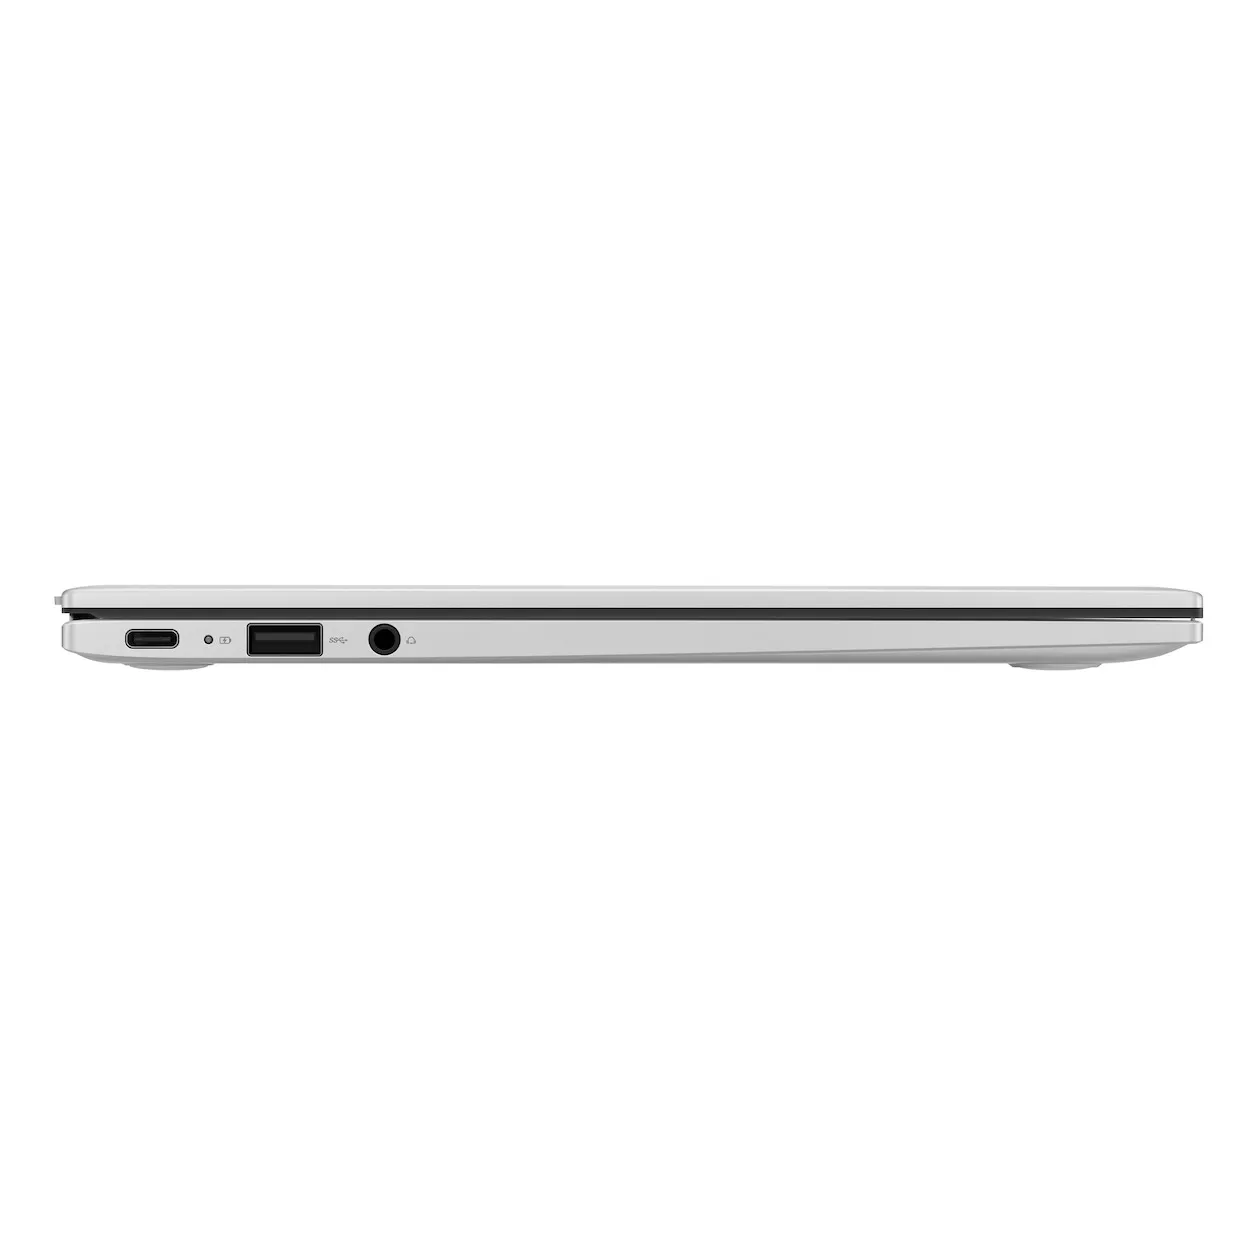 Asus Chromebook C425TA-H50334